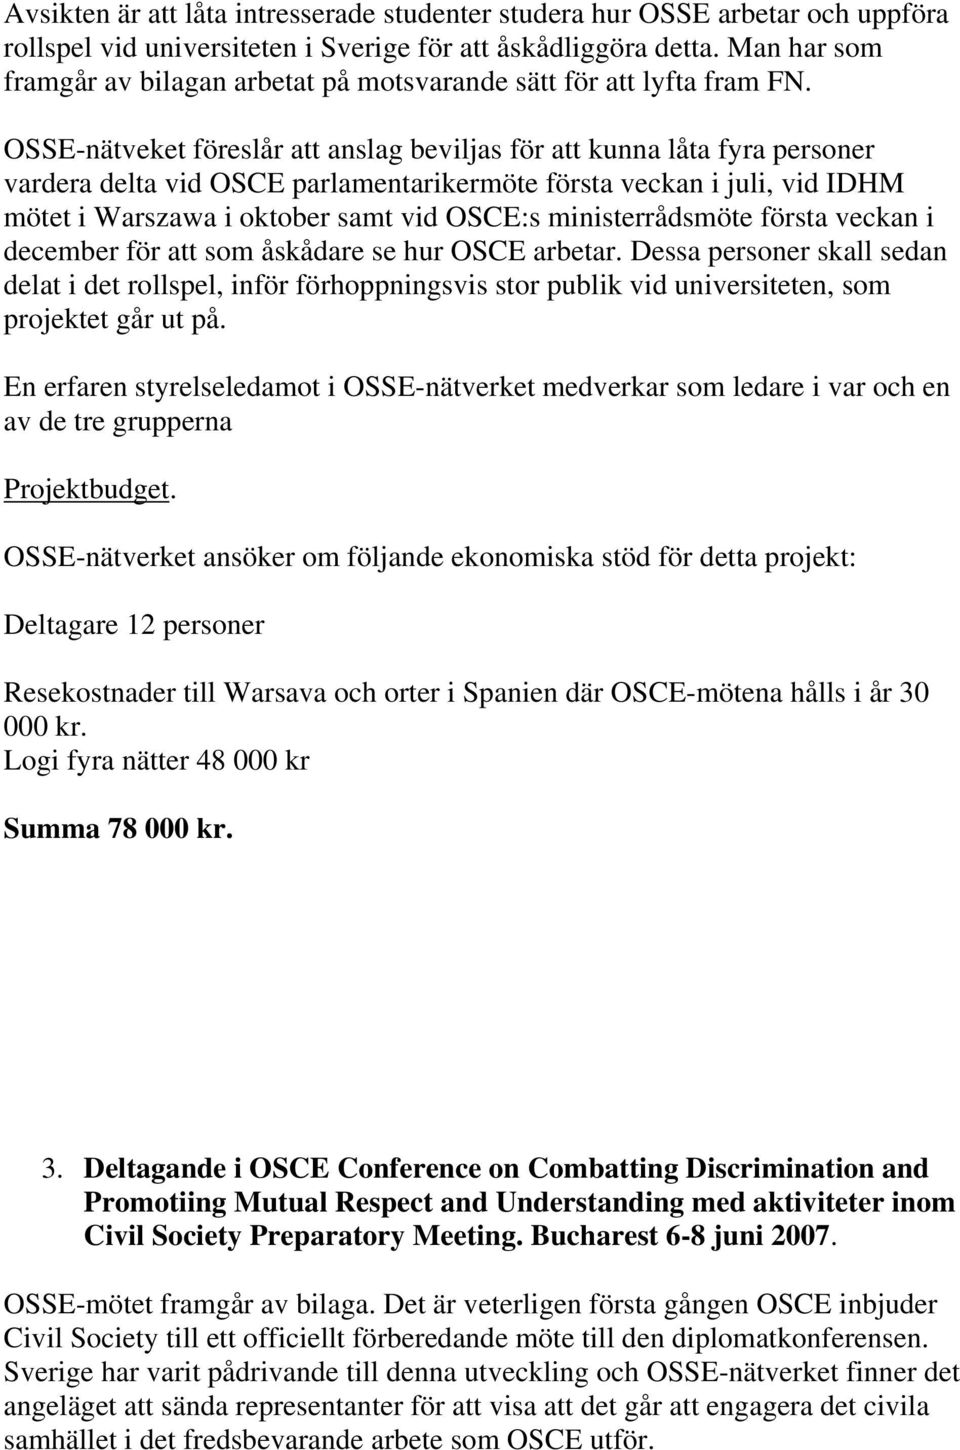 OSSE-nätveket föreslår att anslag beviljas för att kunna låta fyra personer vardera delta vid OSCE parlamentarikermöte första veckan i juli, vid IDHM mötet i Warszawa i oktober samt vid OSCE:s